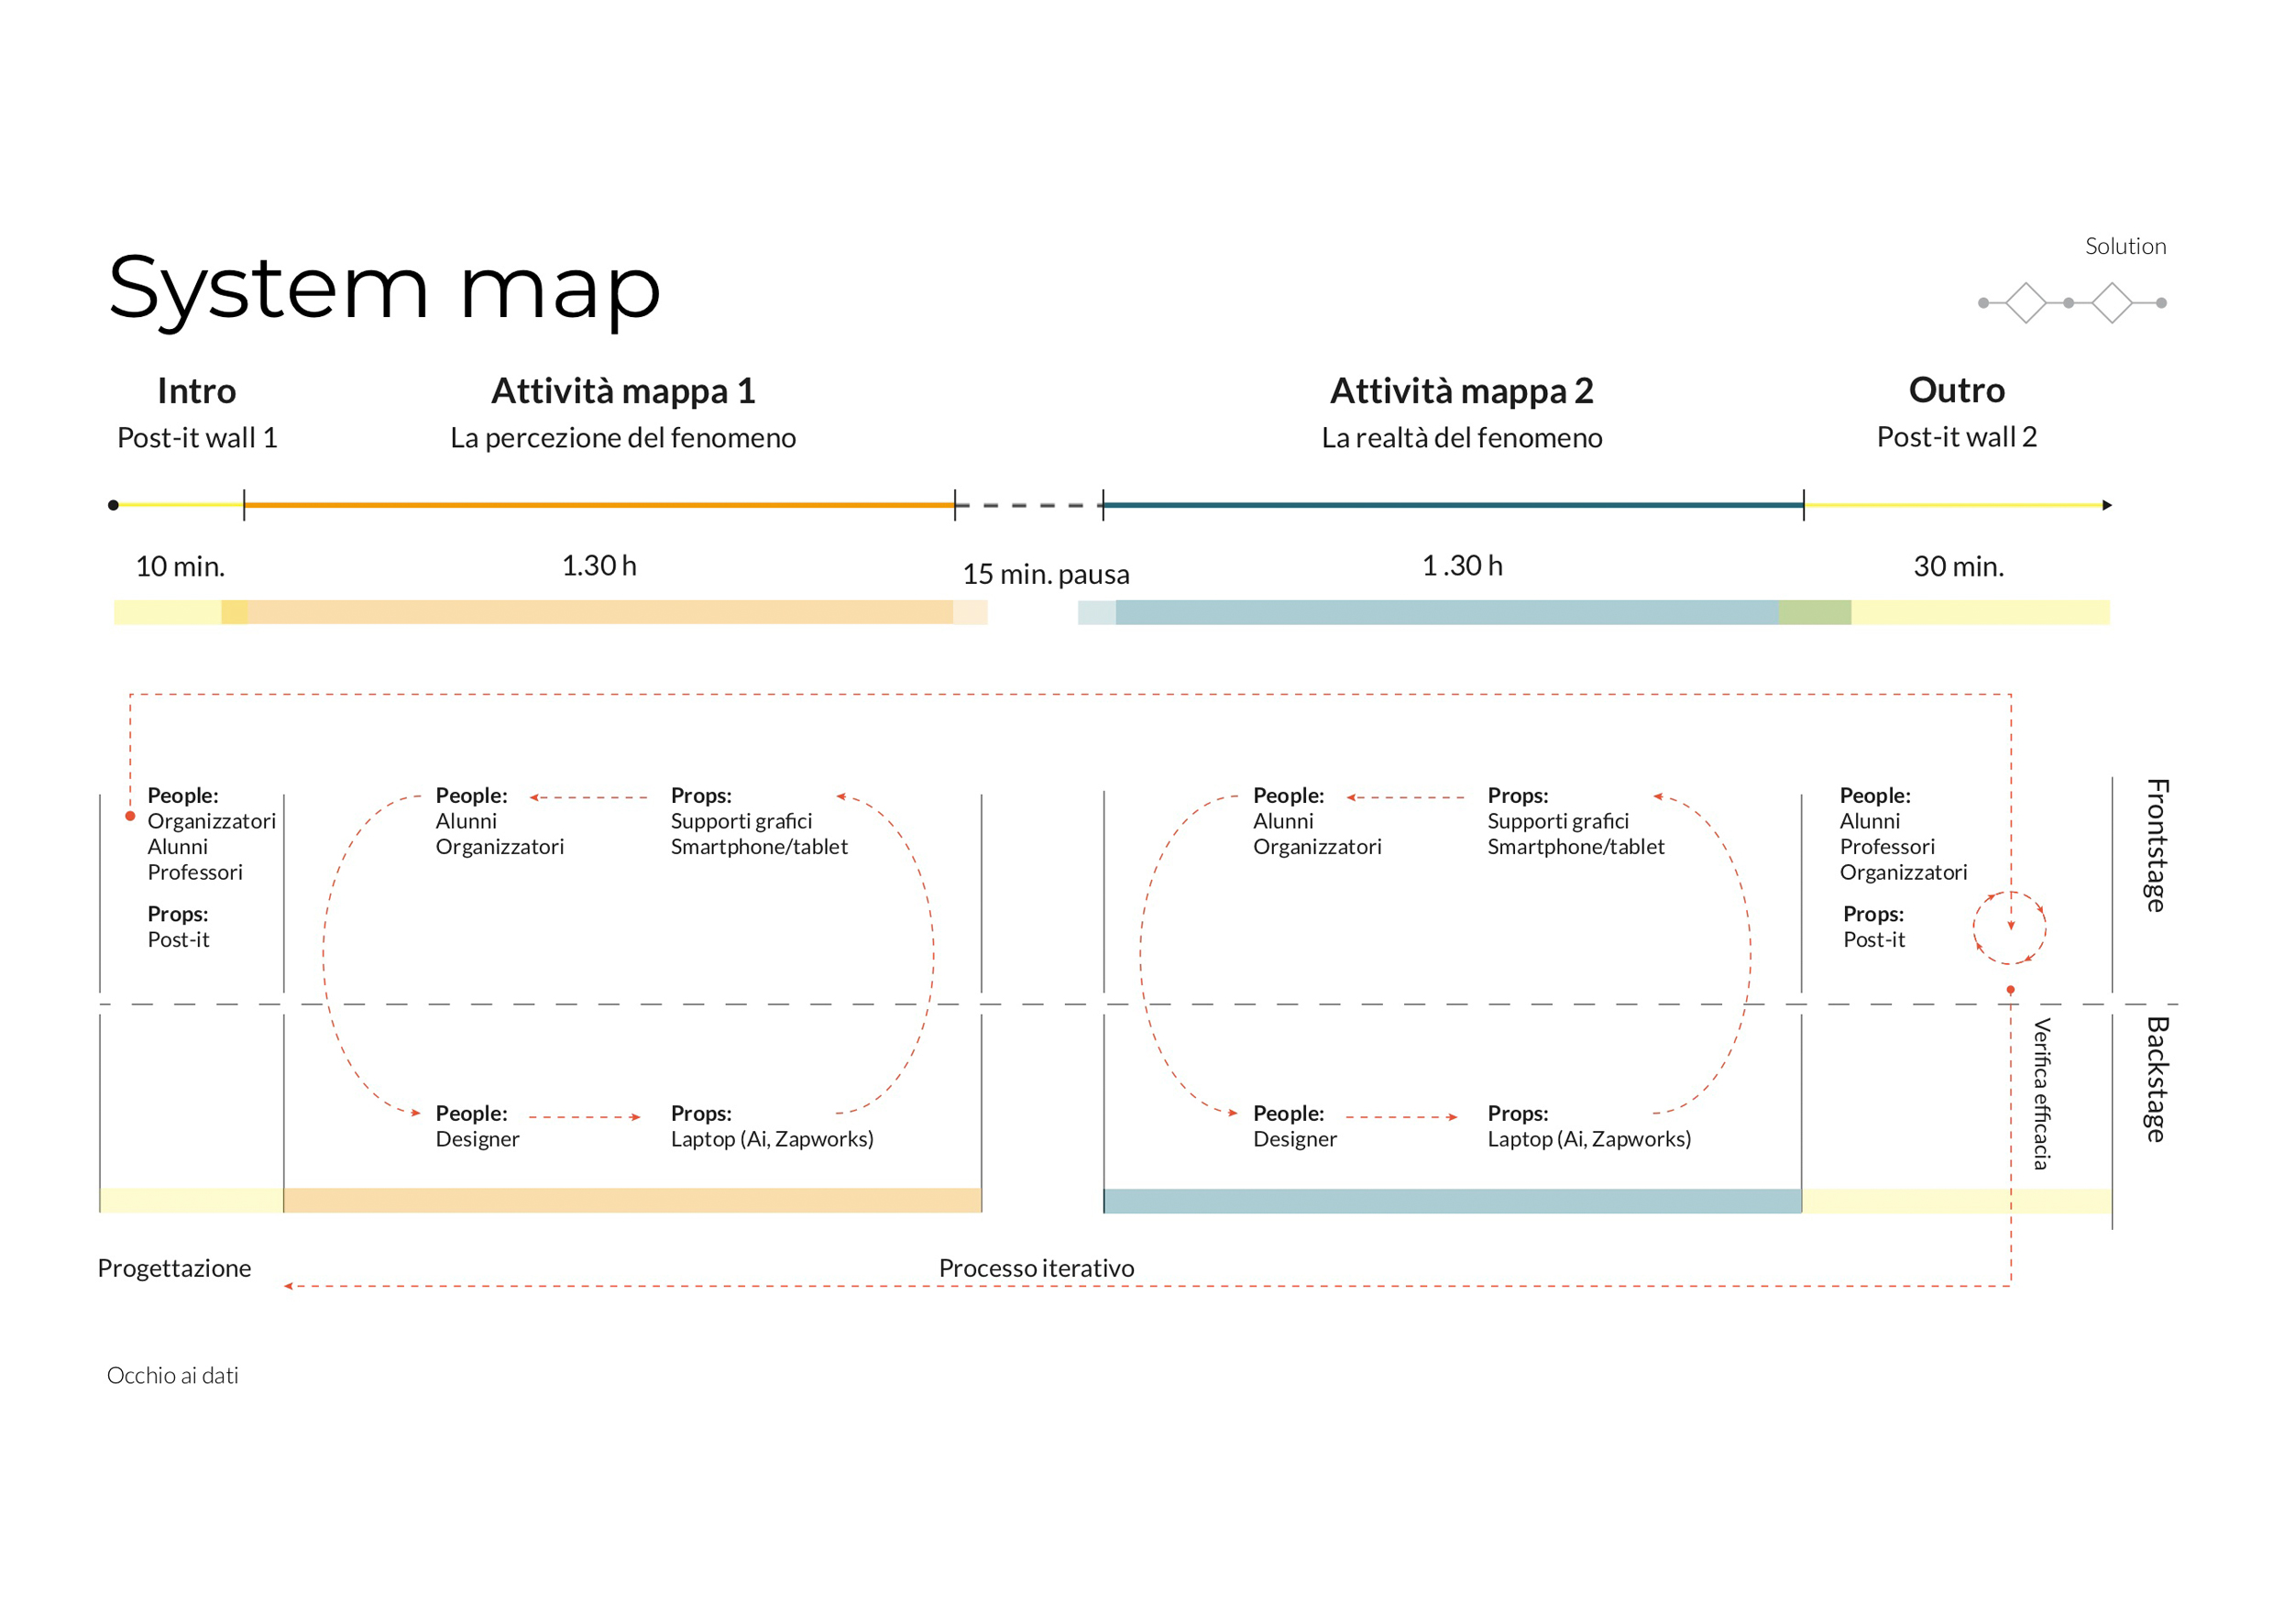 Schema system map del progetto "la sindrome dell'Assedio"